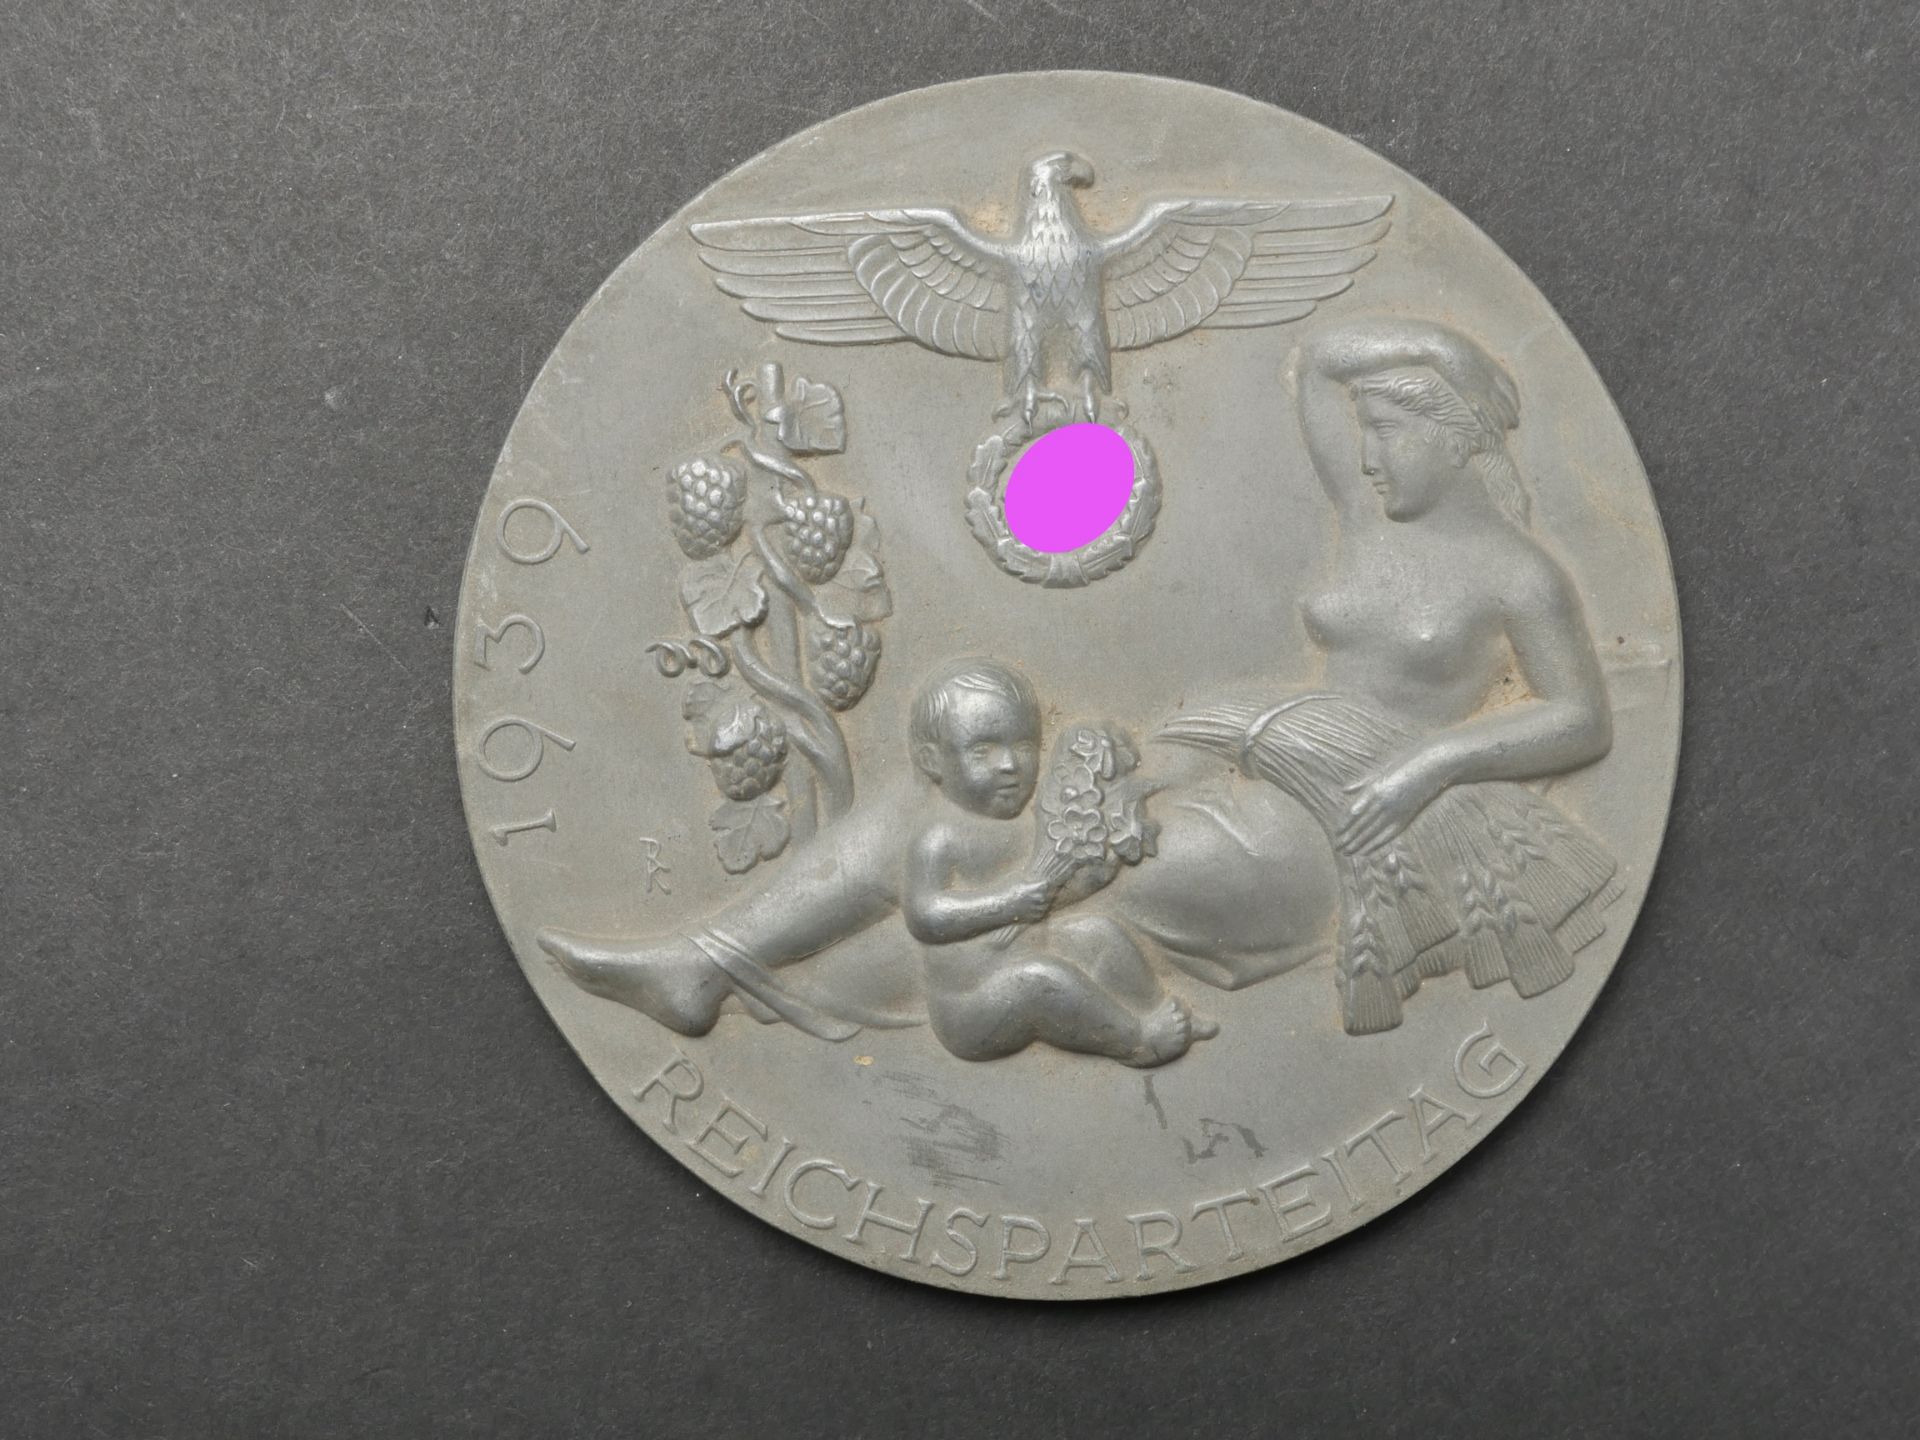 Medaille Reichsparteitag 1939. Reichsparteitag 1939 medal.